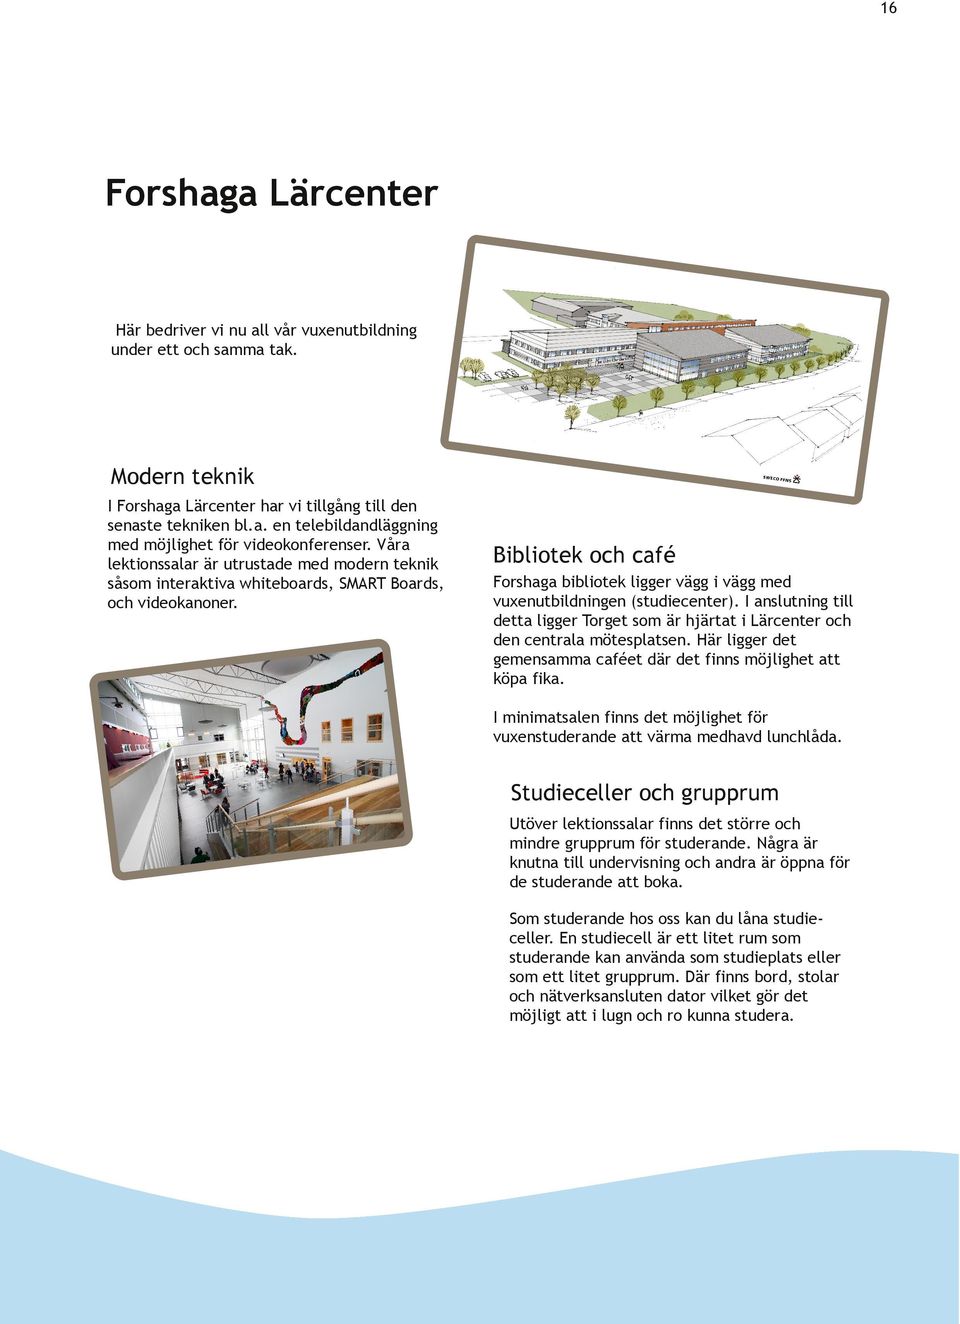 Bibliotek och café Forshaga bibliotek ligger vägg i vägg med vuxenutbildningen (studiecenter). I anslutning till detta ligger Torget som är hjärtat i Lärcenter och den centrala mötesplatsen.